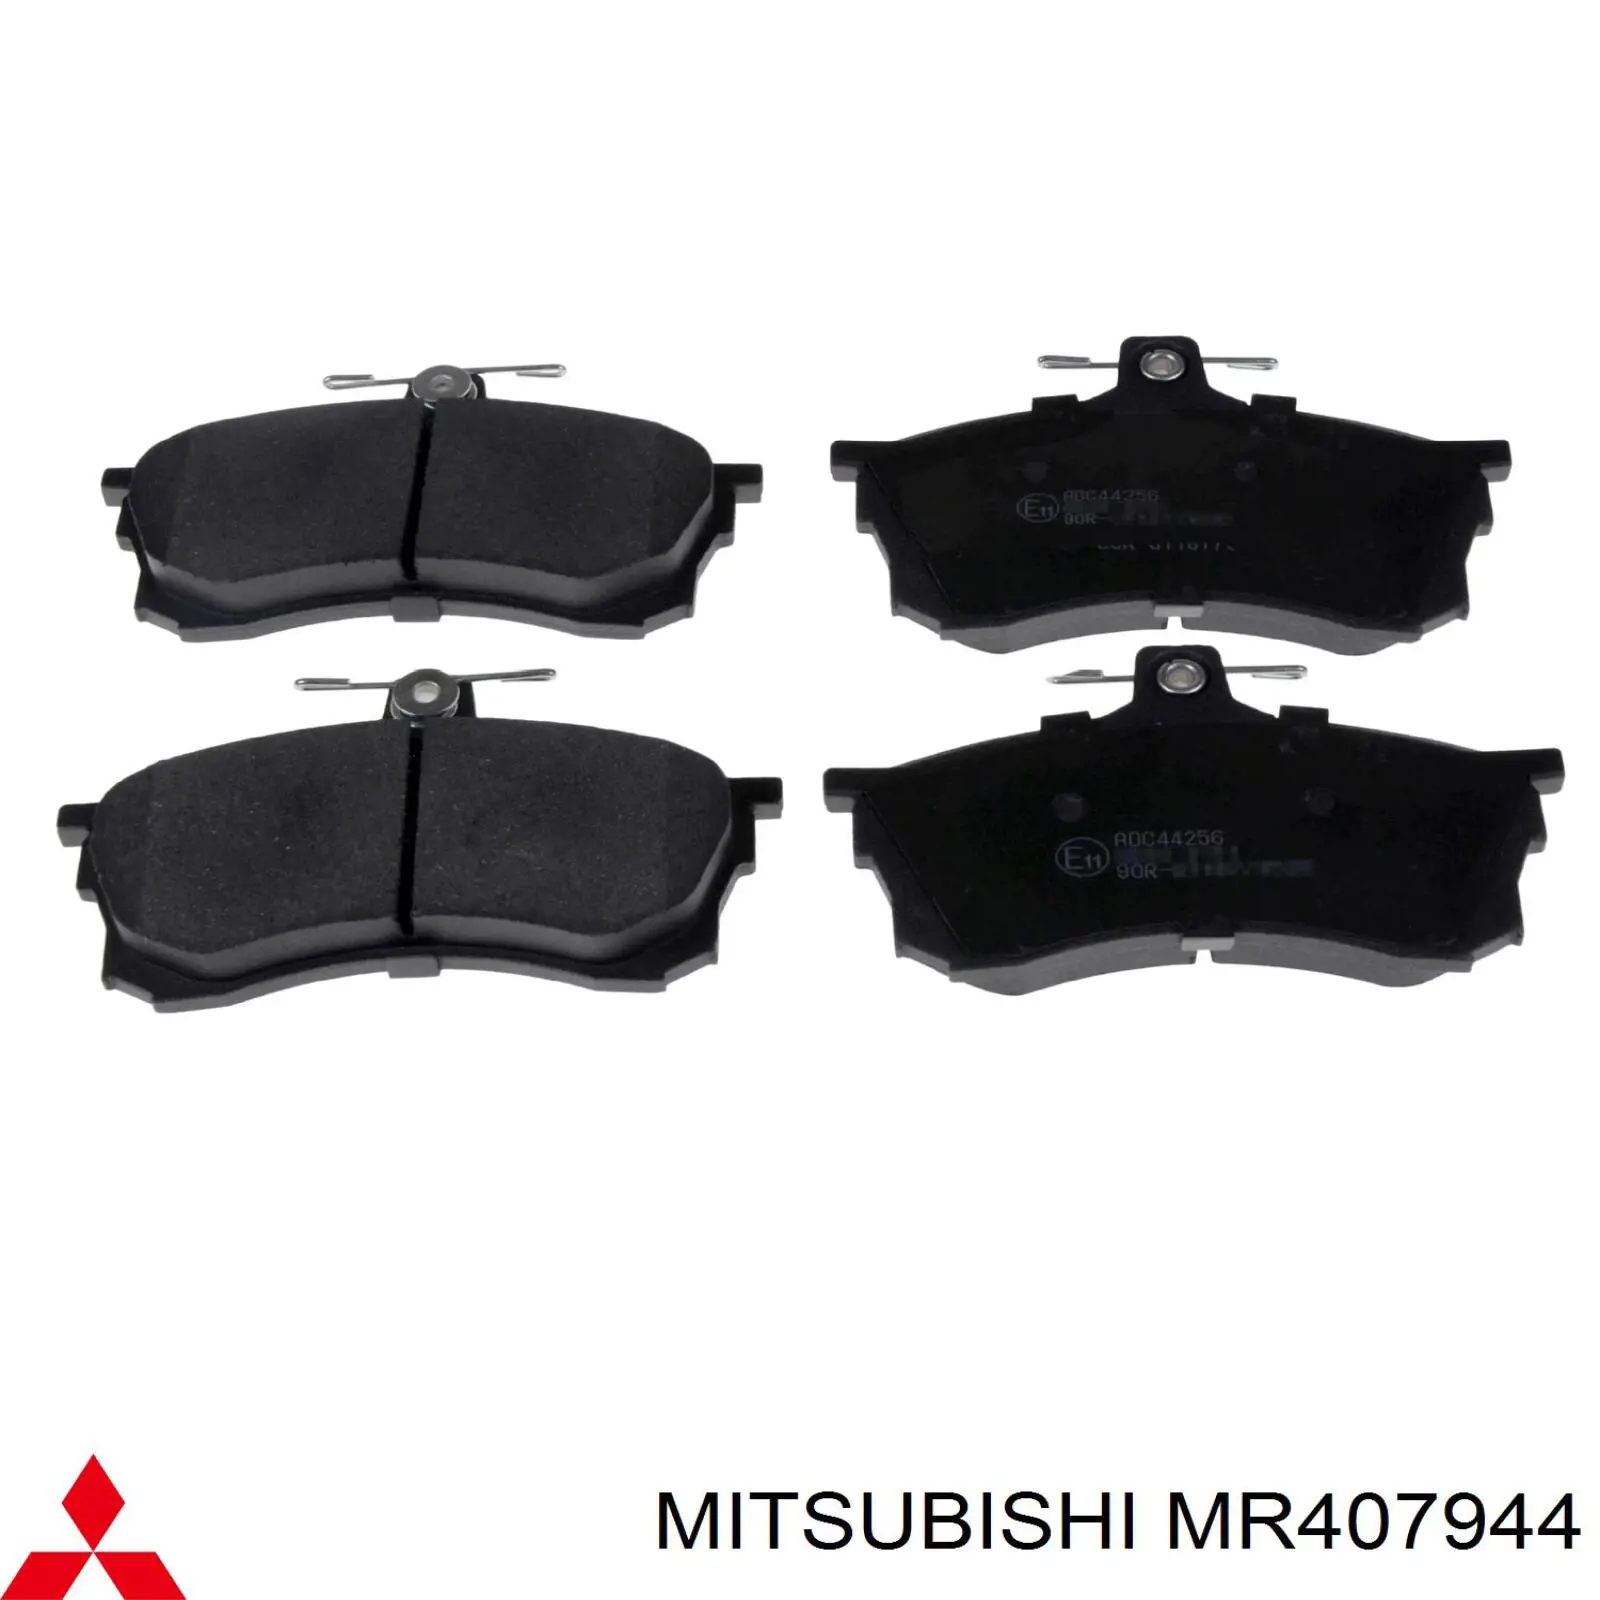 MR407944 Mitsubishi колодки тормозные передние дисковые